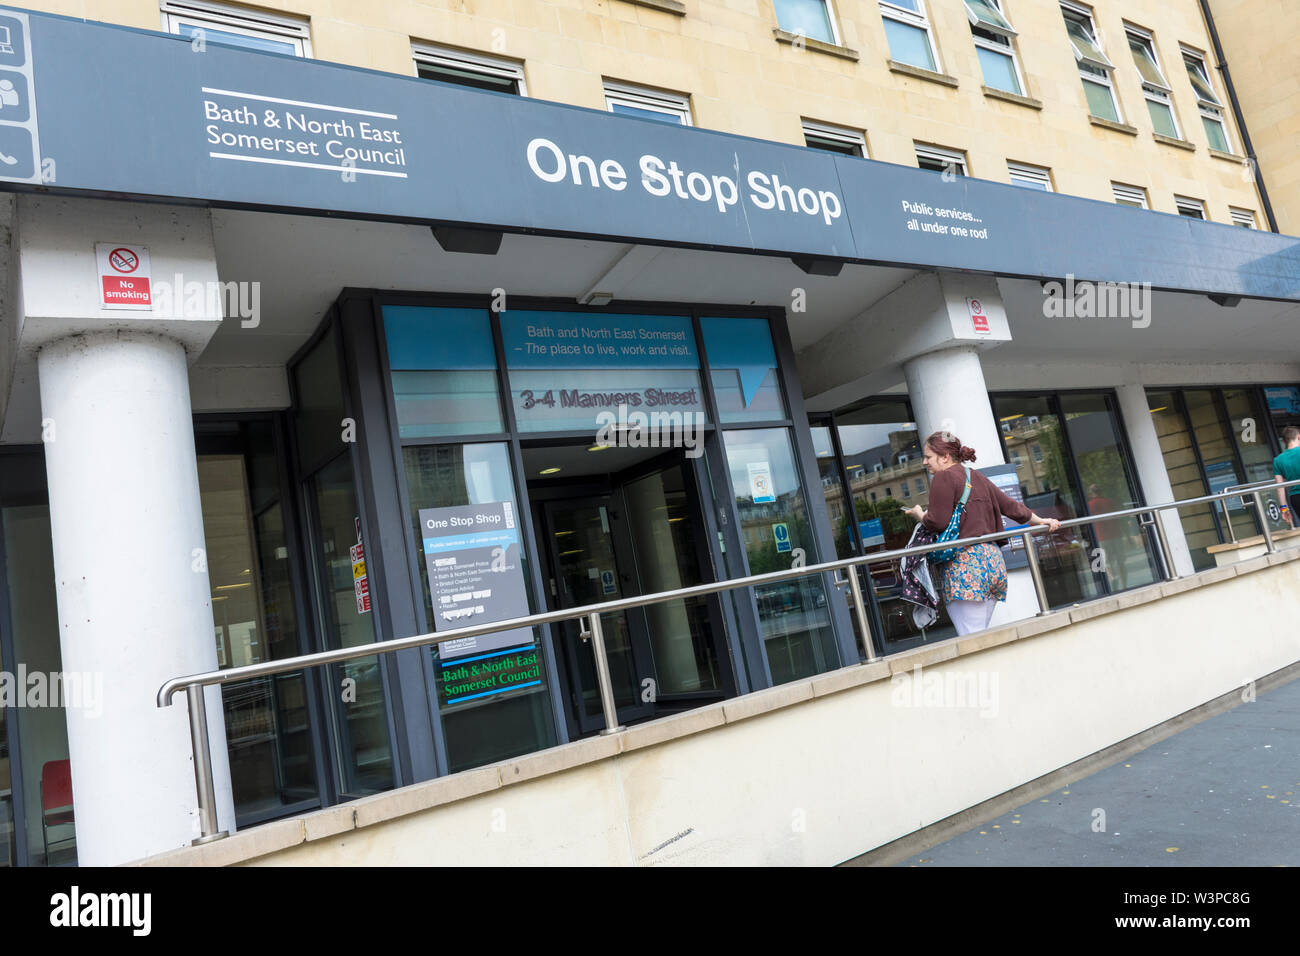 BaNES Rat one stop shop für öffentliche Dienstleistungen, Manvers Street, Bath Spa, Großbritannien. Stockfoto